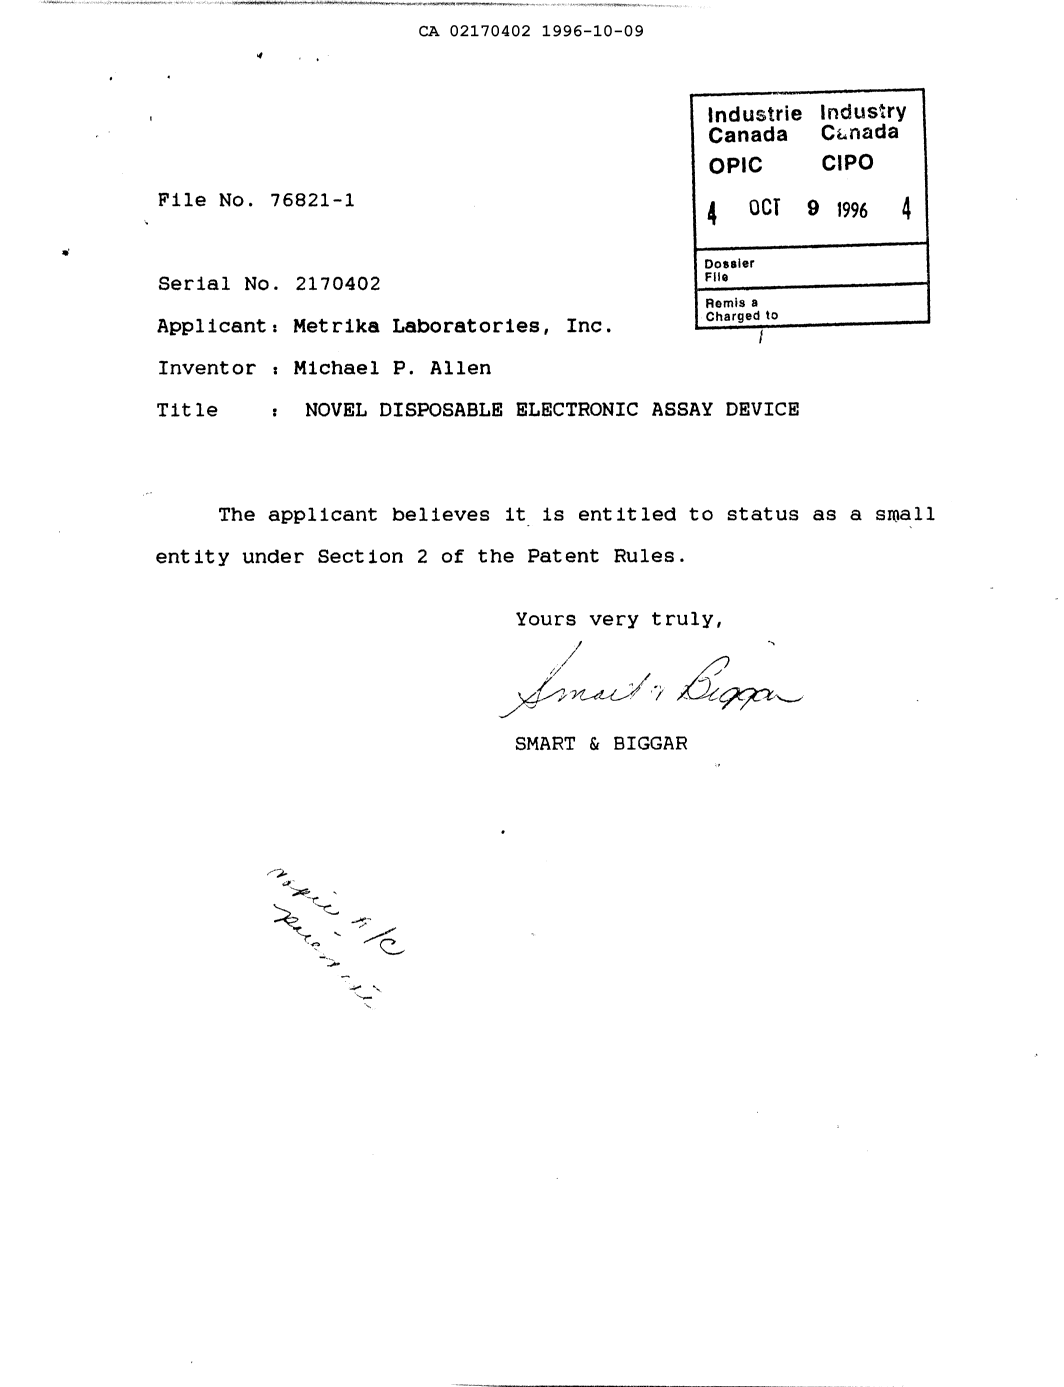 Document de brevet canadien 2170402. Correspondance 19961009. Image 1 de 1